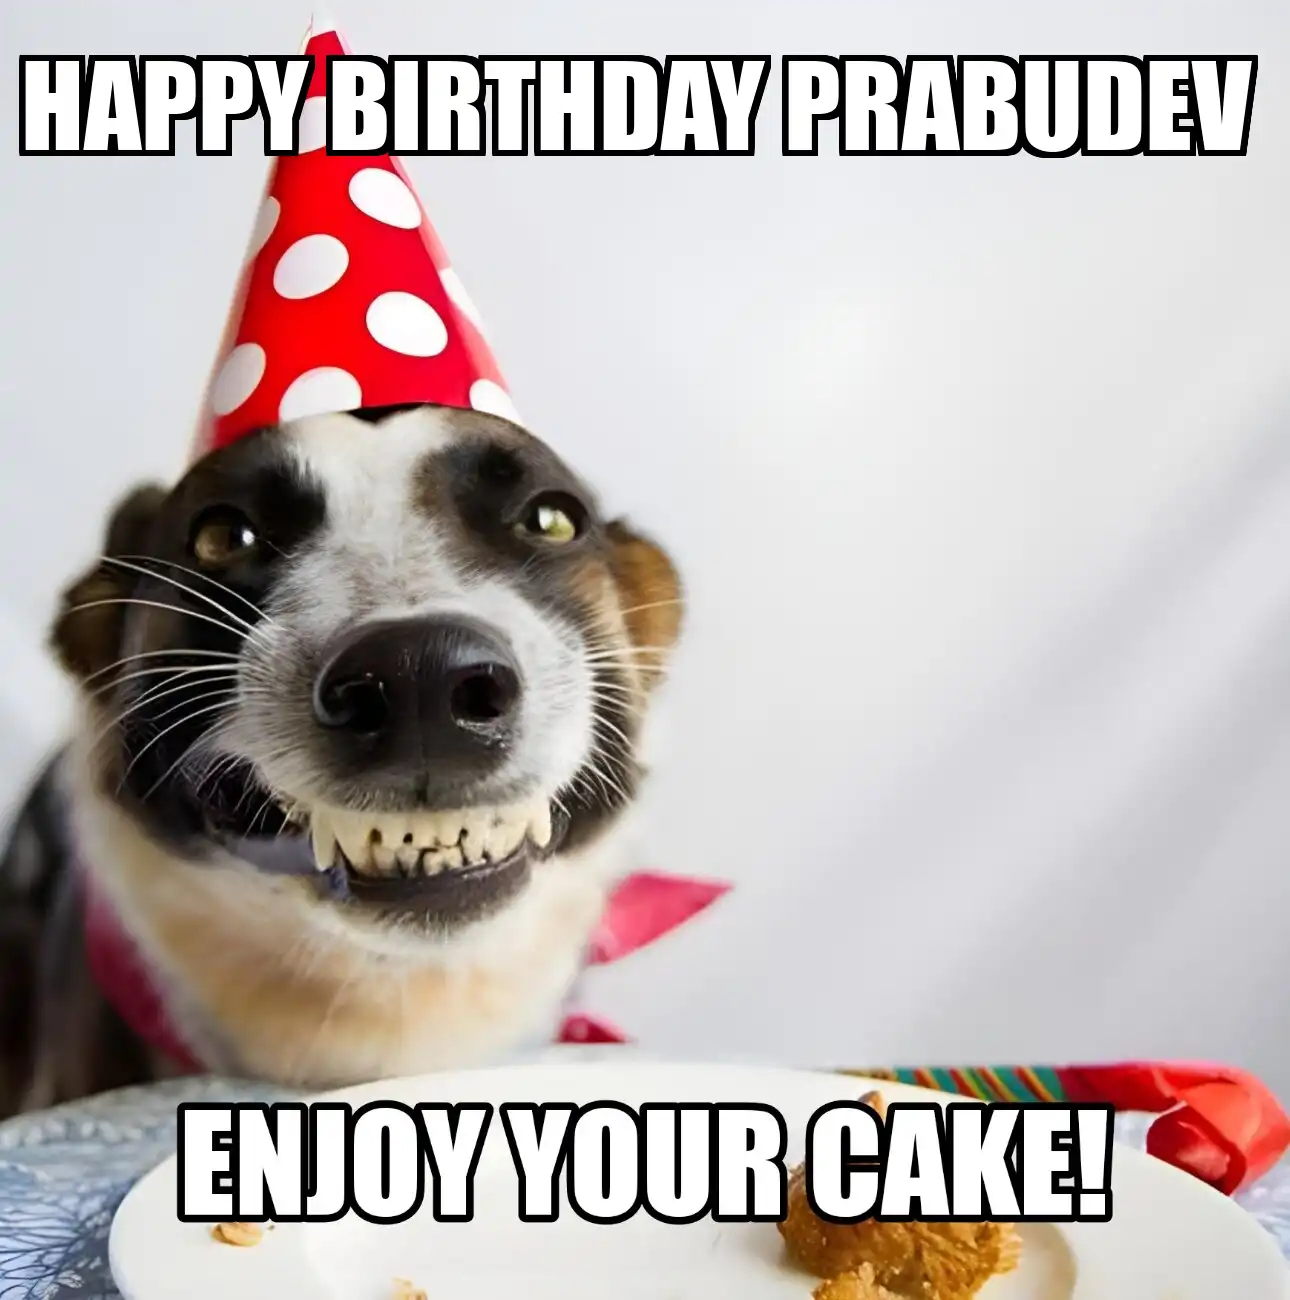 Happy Birthday Prabudev Enjoy Your Cake Dog Meme